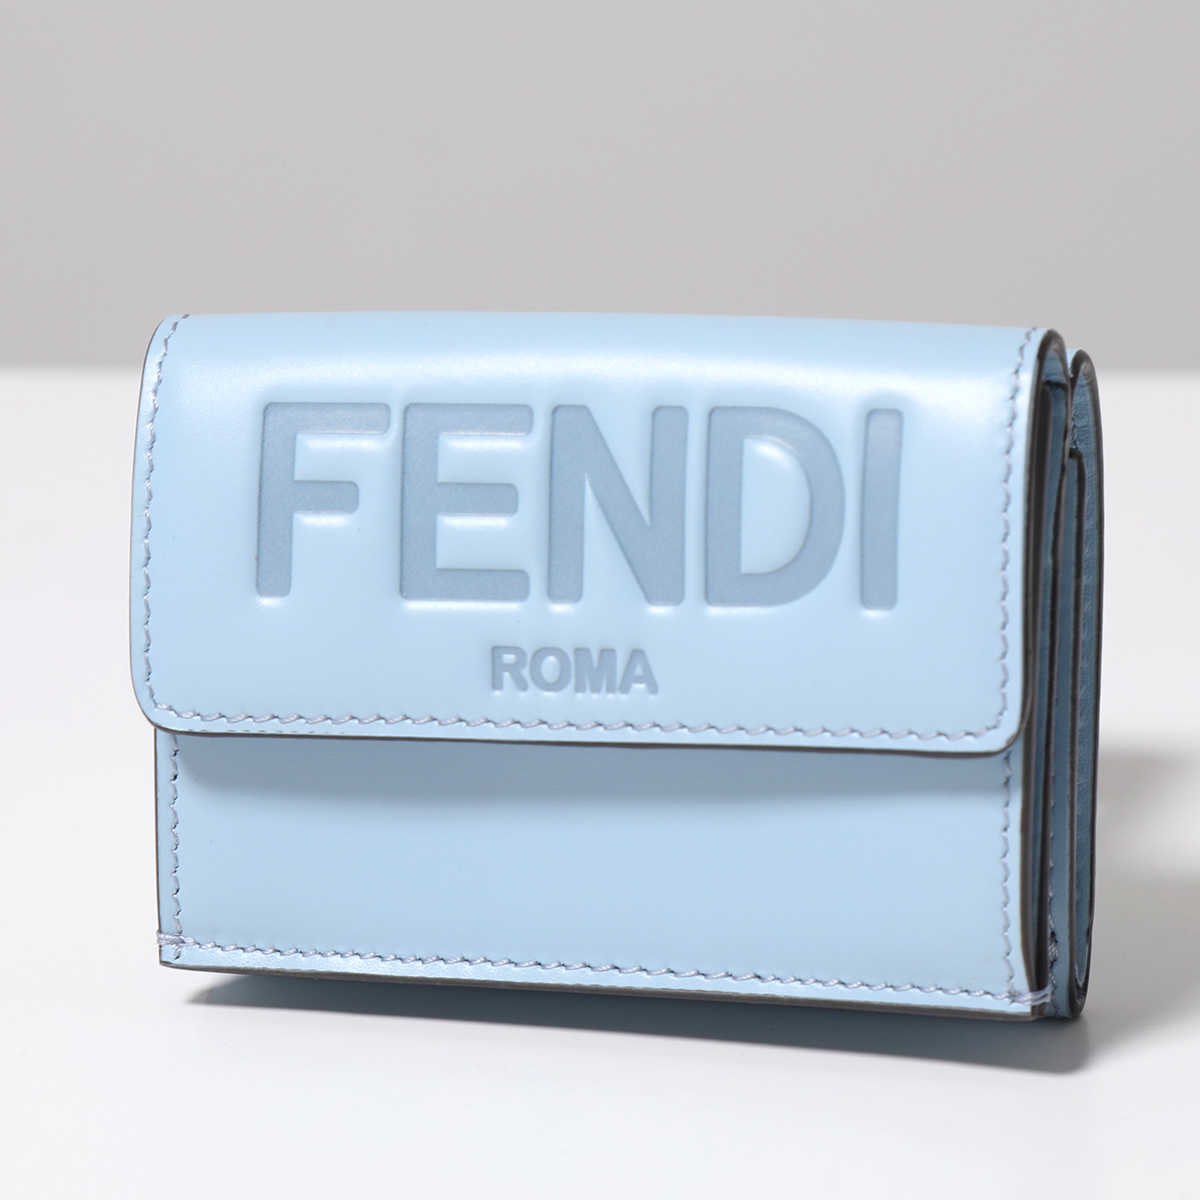 FENDI フェンディ 三つ折り財布 8M0395 AAYZ レディース マイクロ ロゴ